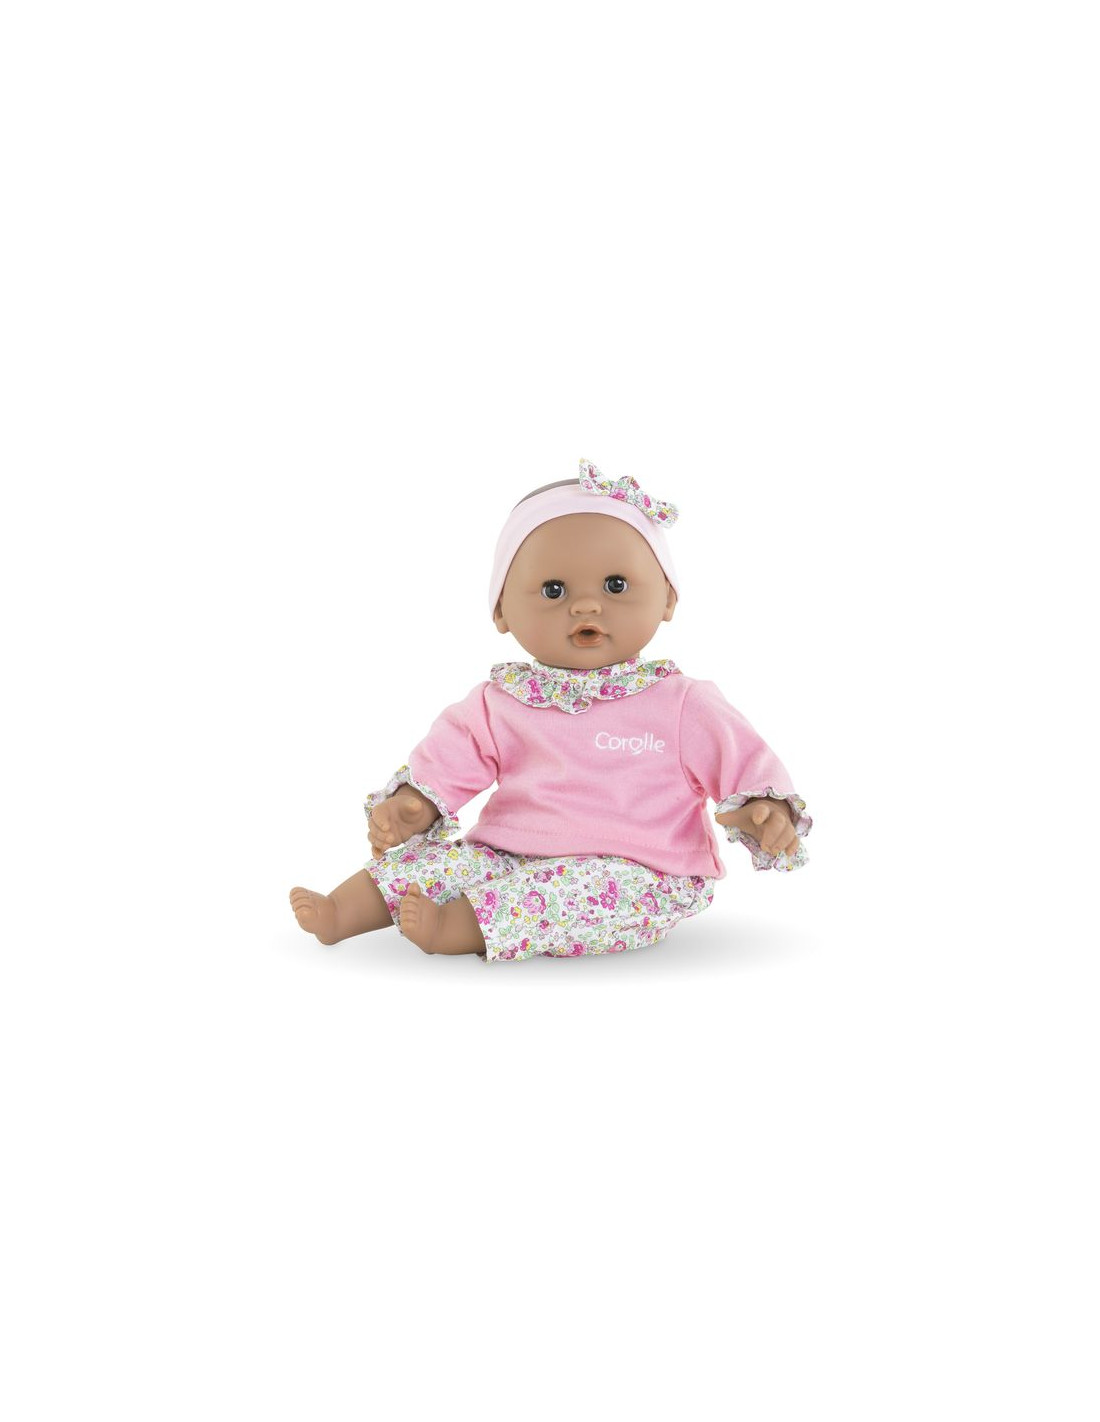 Baby Alive : Couches de rechange pour poupées et poupons - La